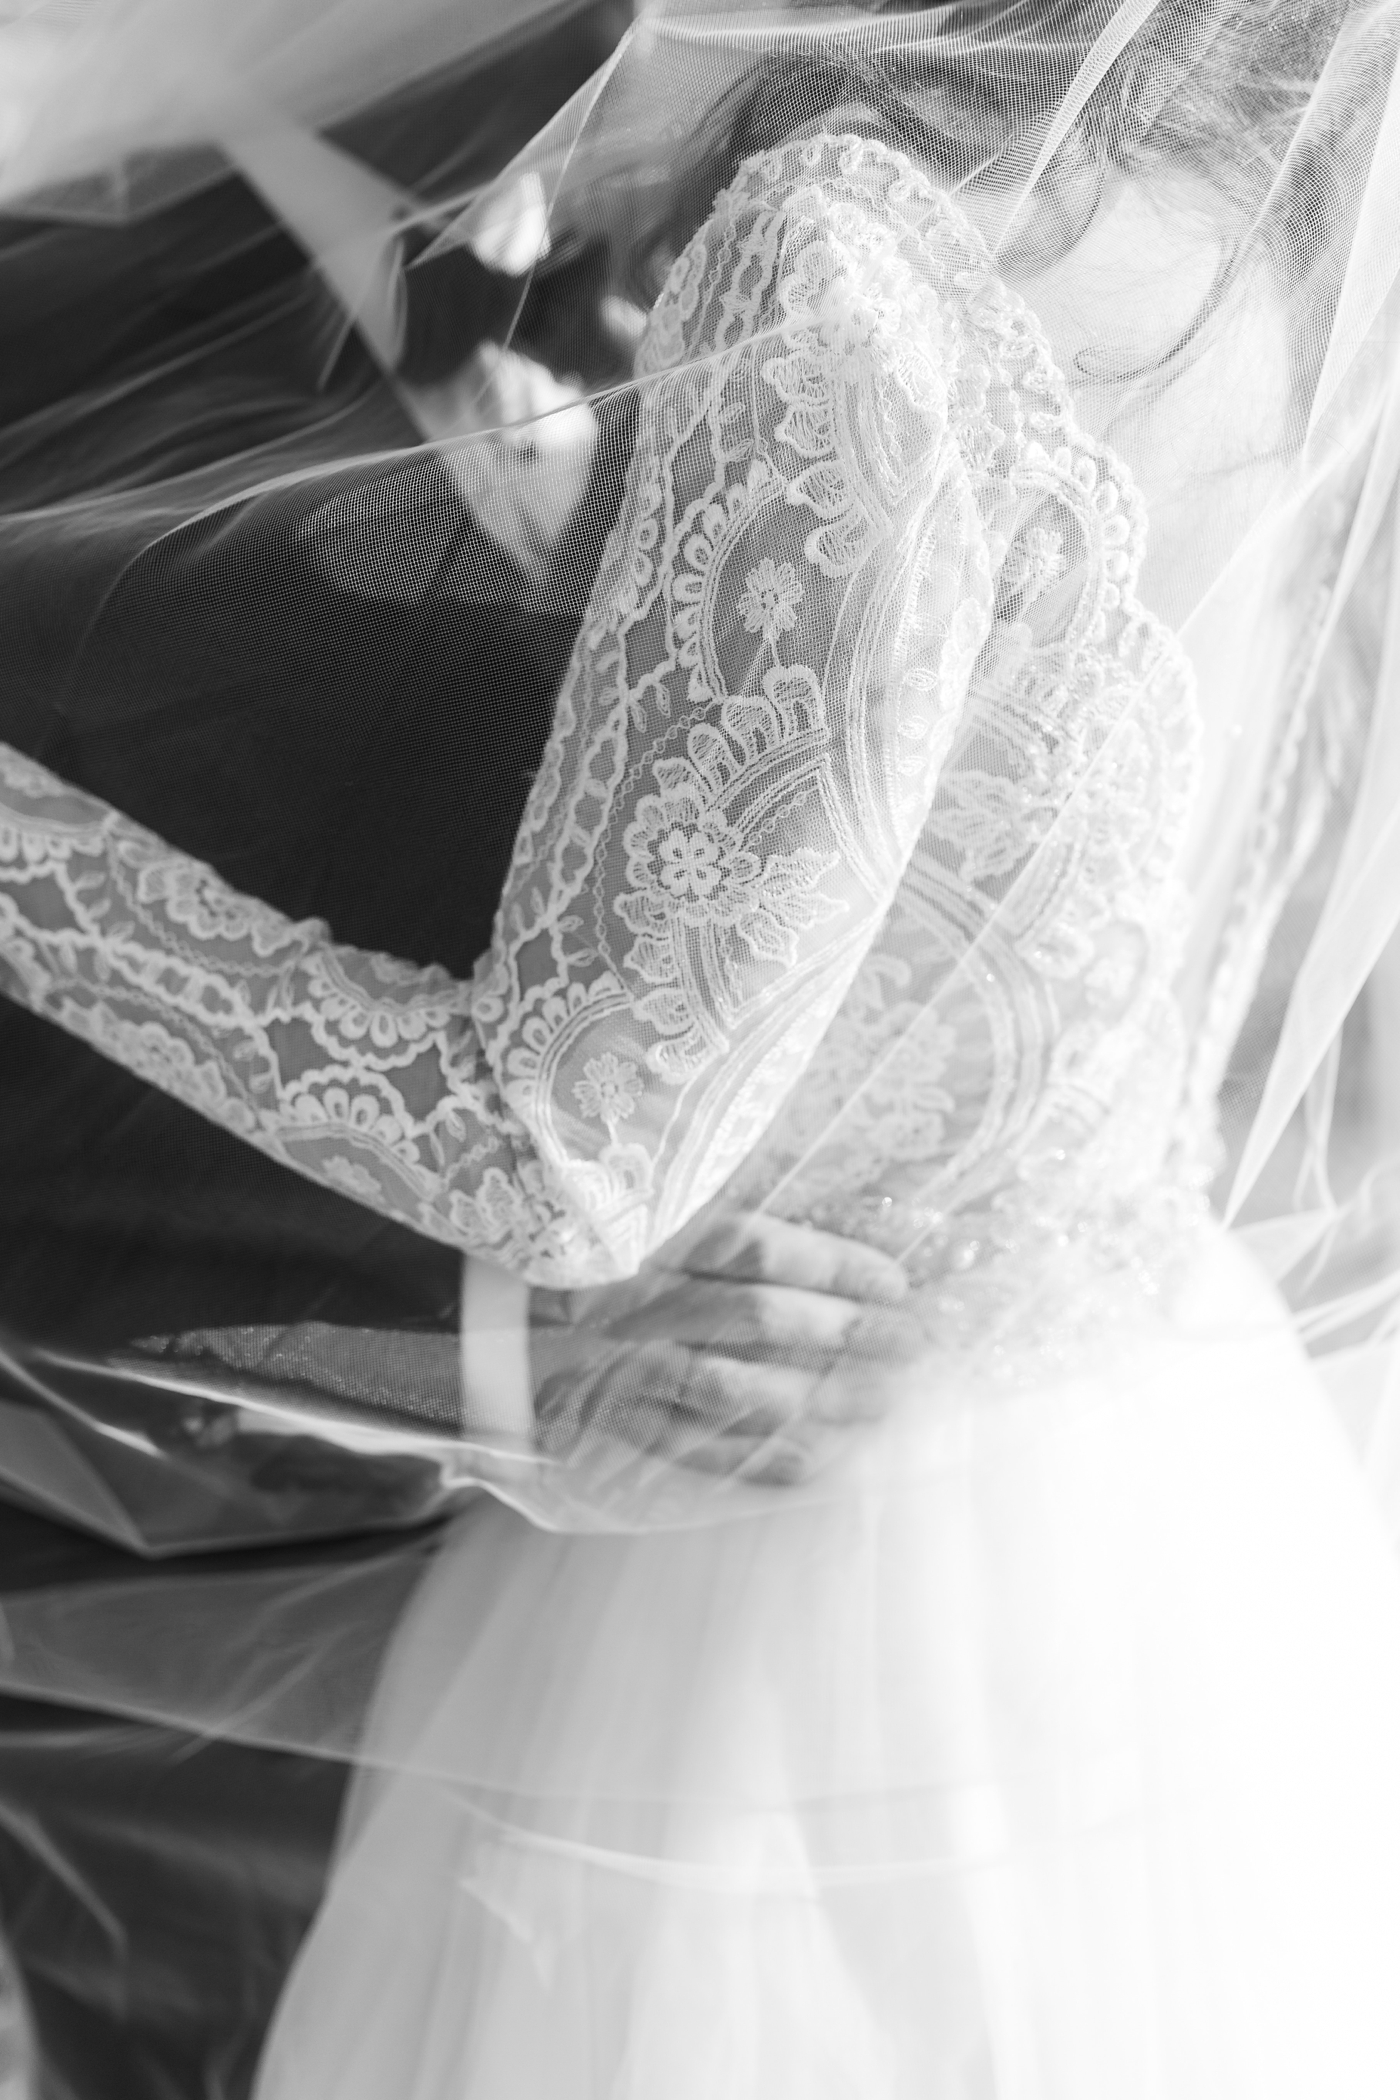 Longsleeve lace wedding dress